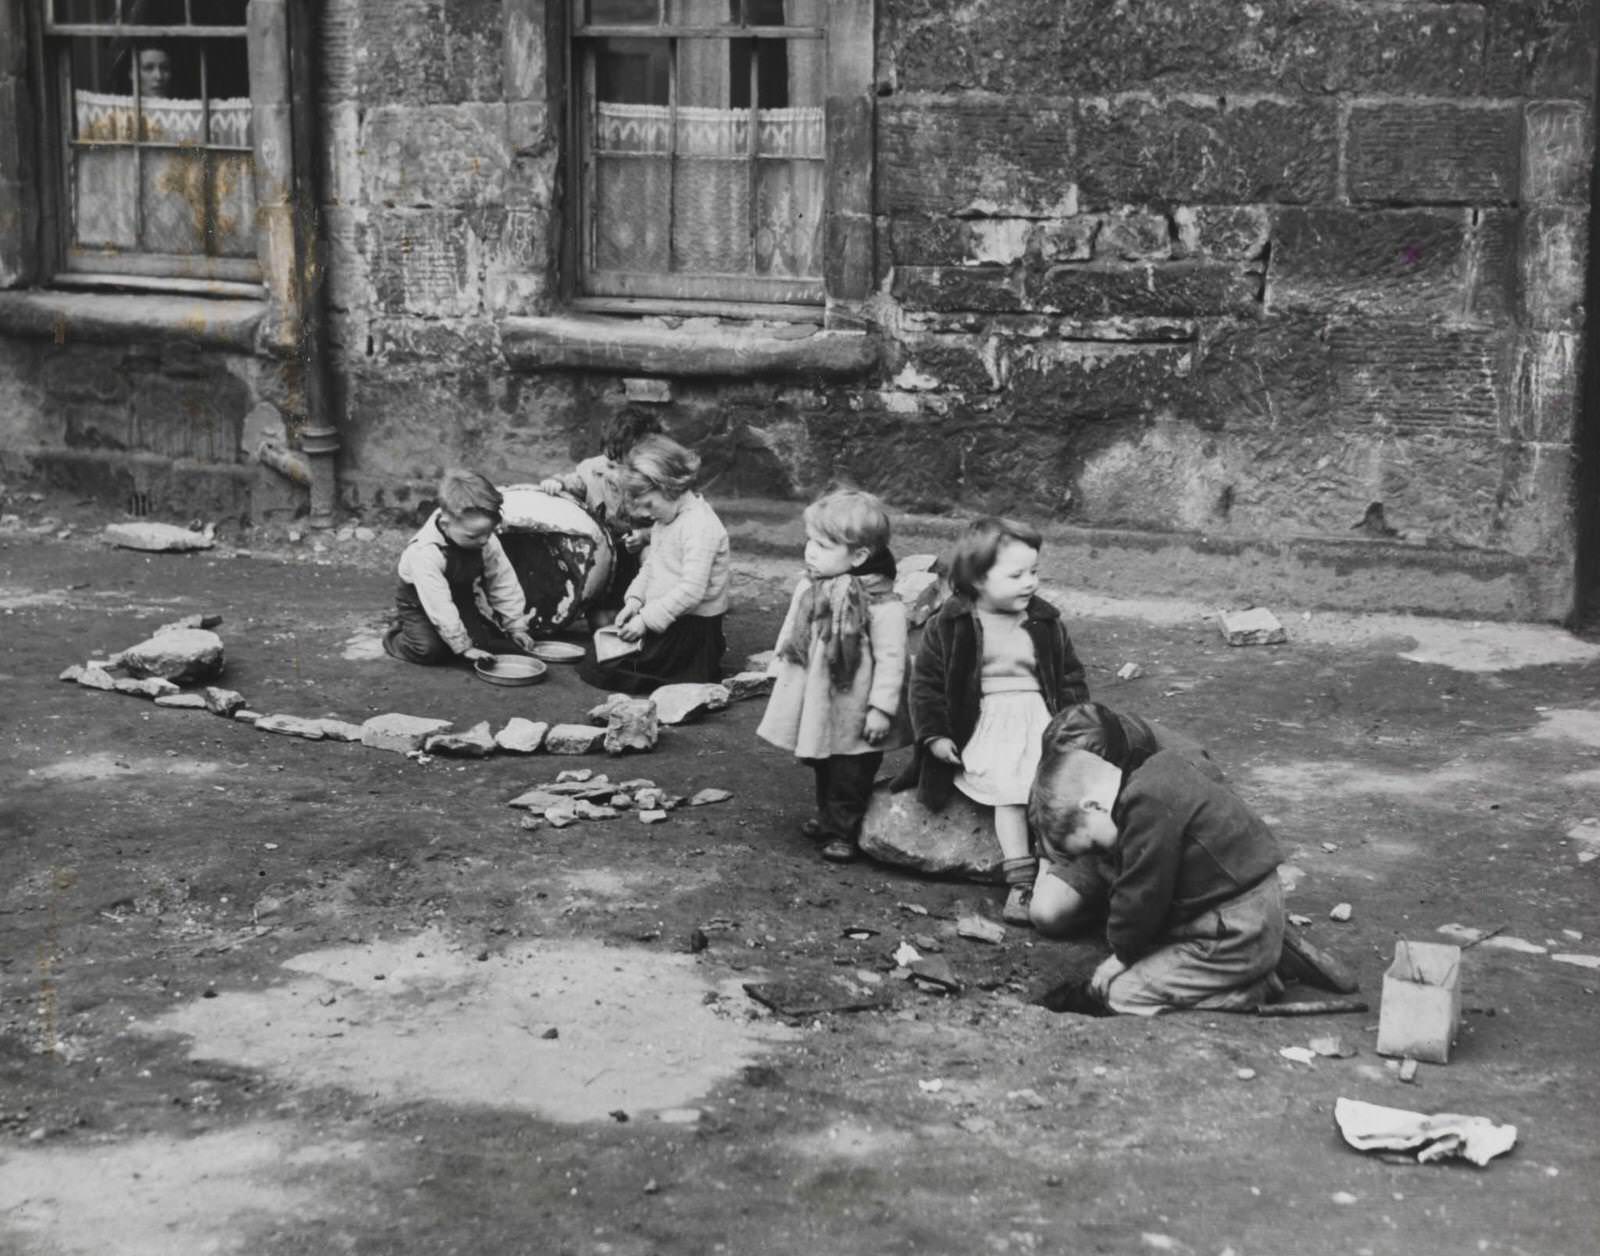 Slum children at play, 1952